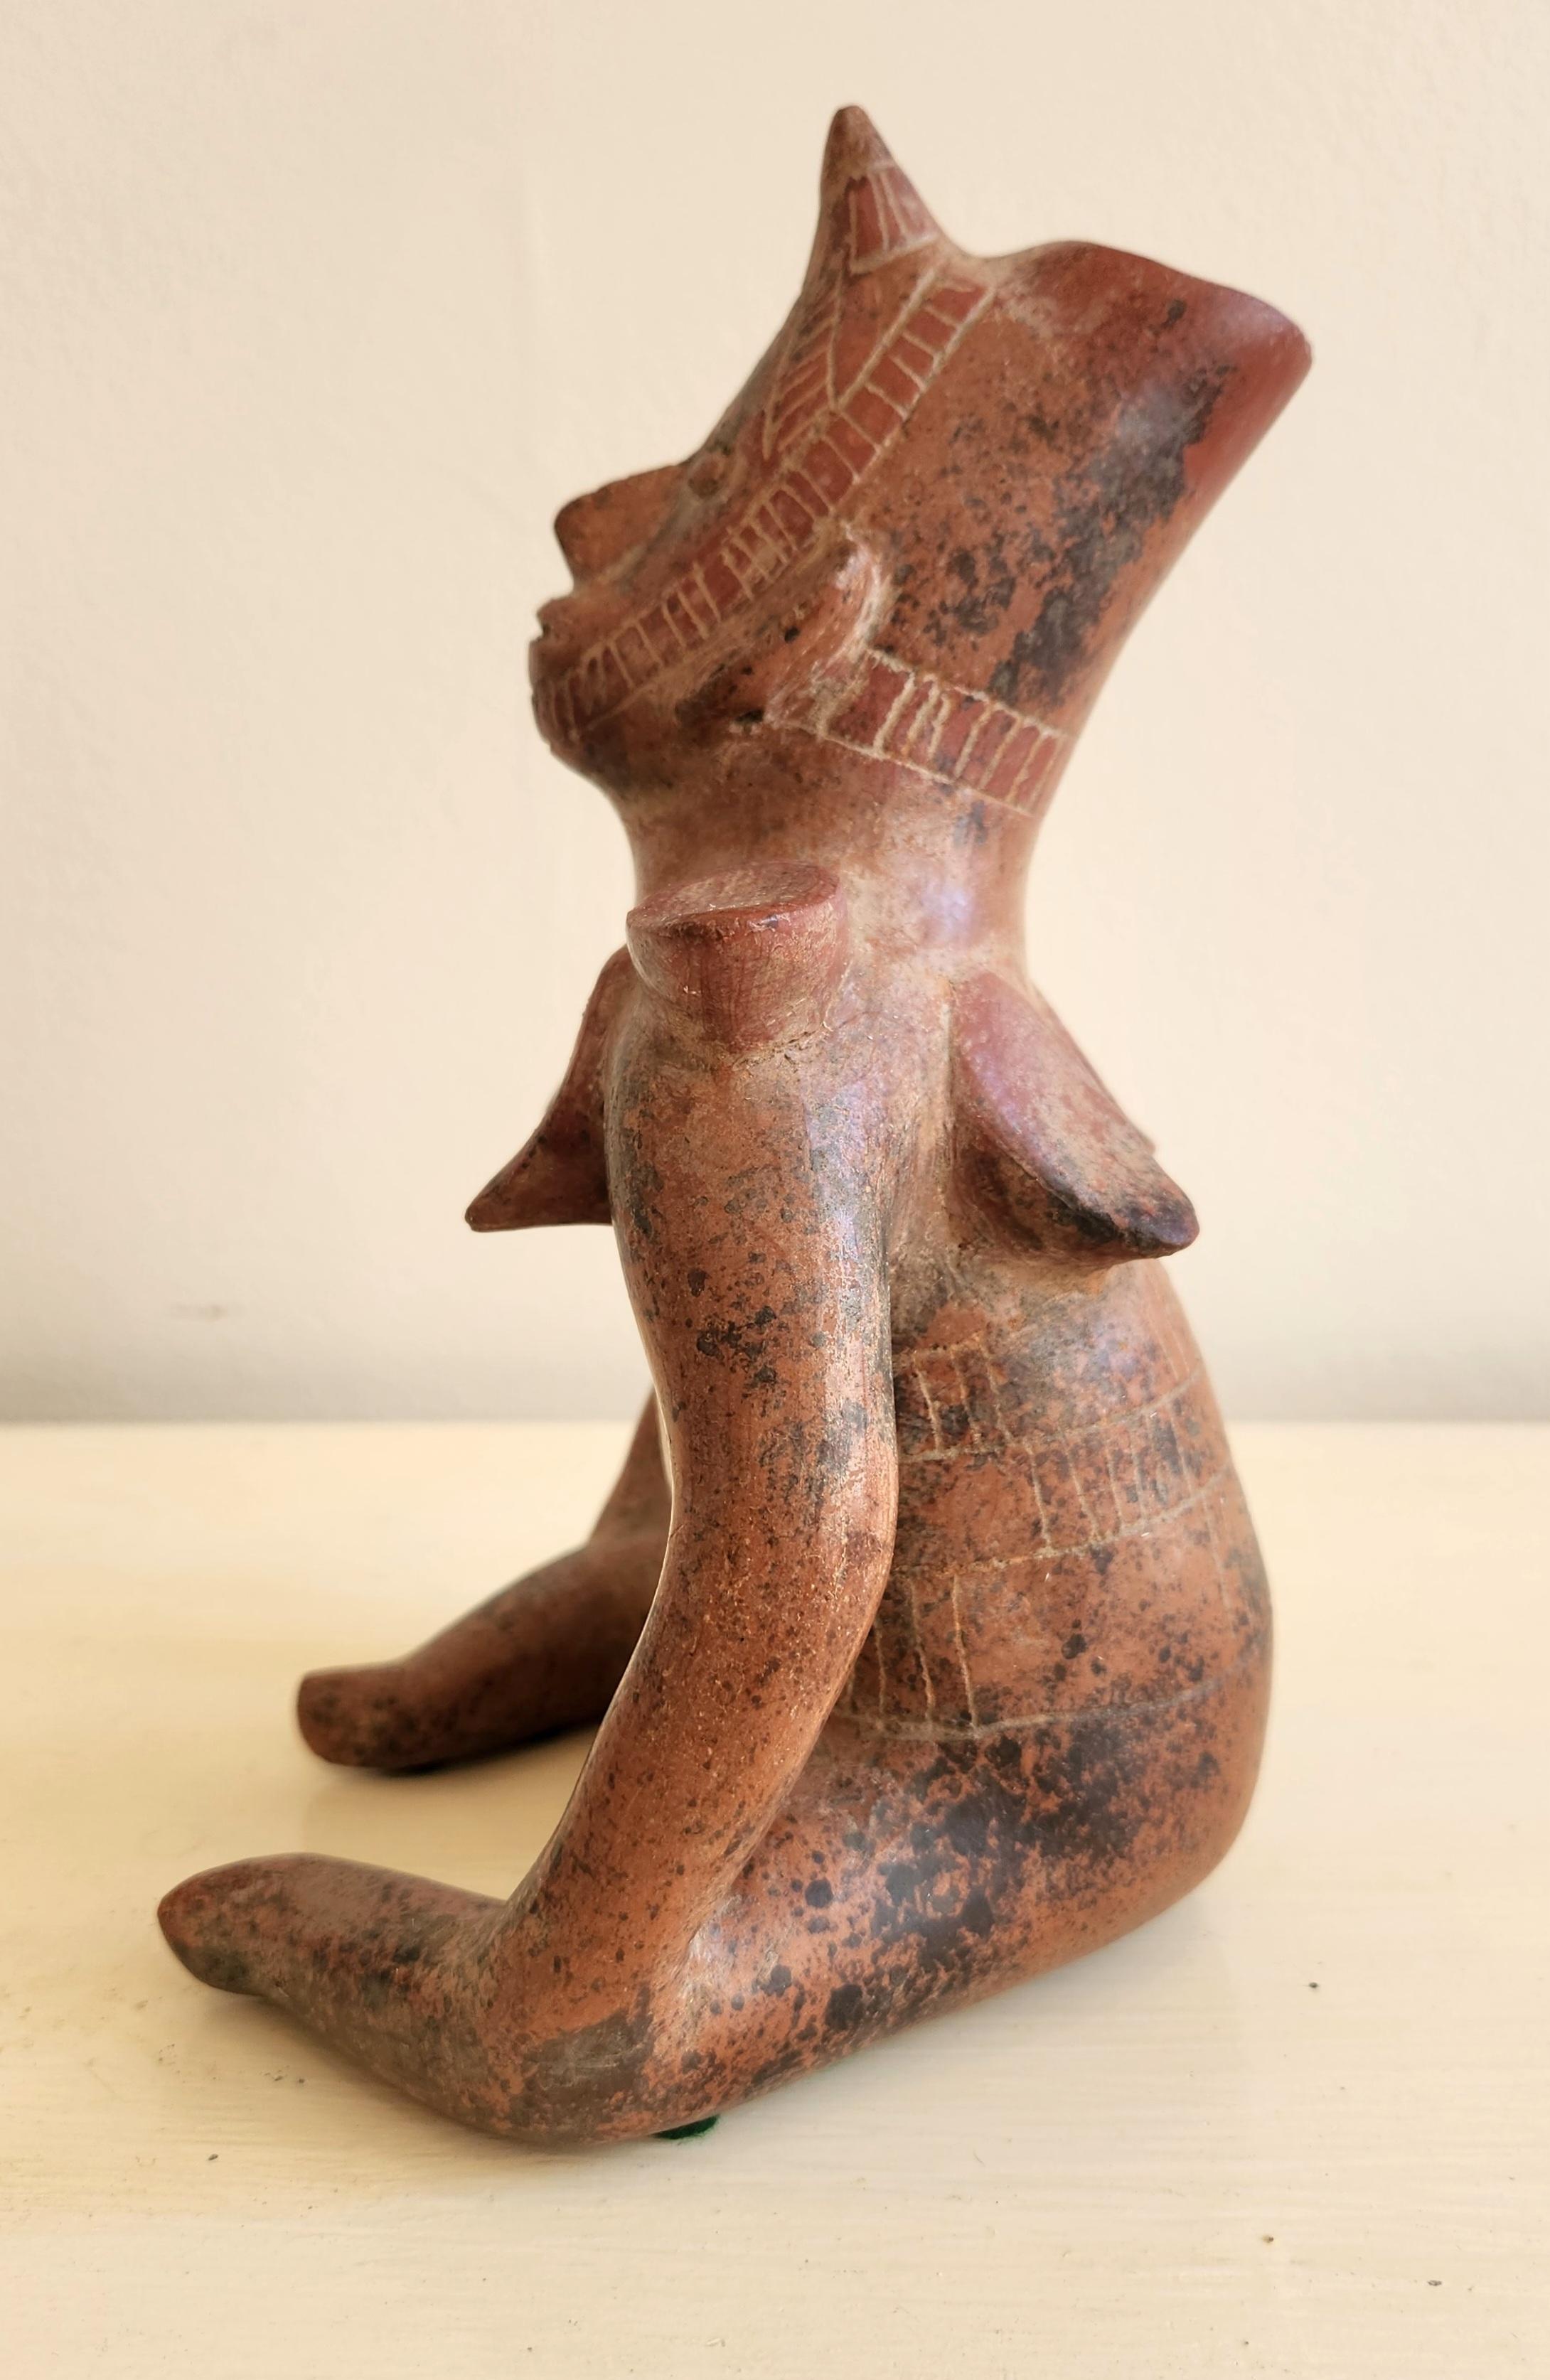 Dieses Werk ist aus keramischer Terrakotta und im pre-Columbianischen Stil gehalten. Es handelt sich um eine Reproduktion von Skulpturen, die typisch für die Kolima-Kultur im Westen Mexikos sind. Diese Originalskulpturen stammen in der Regel aus der